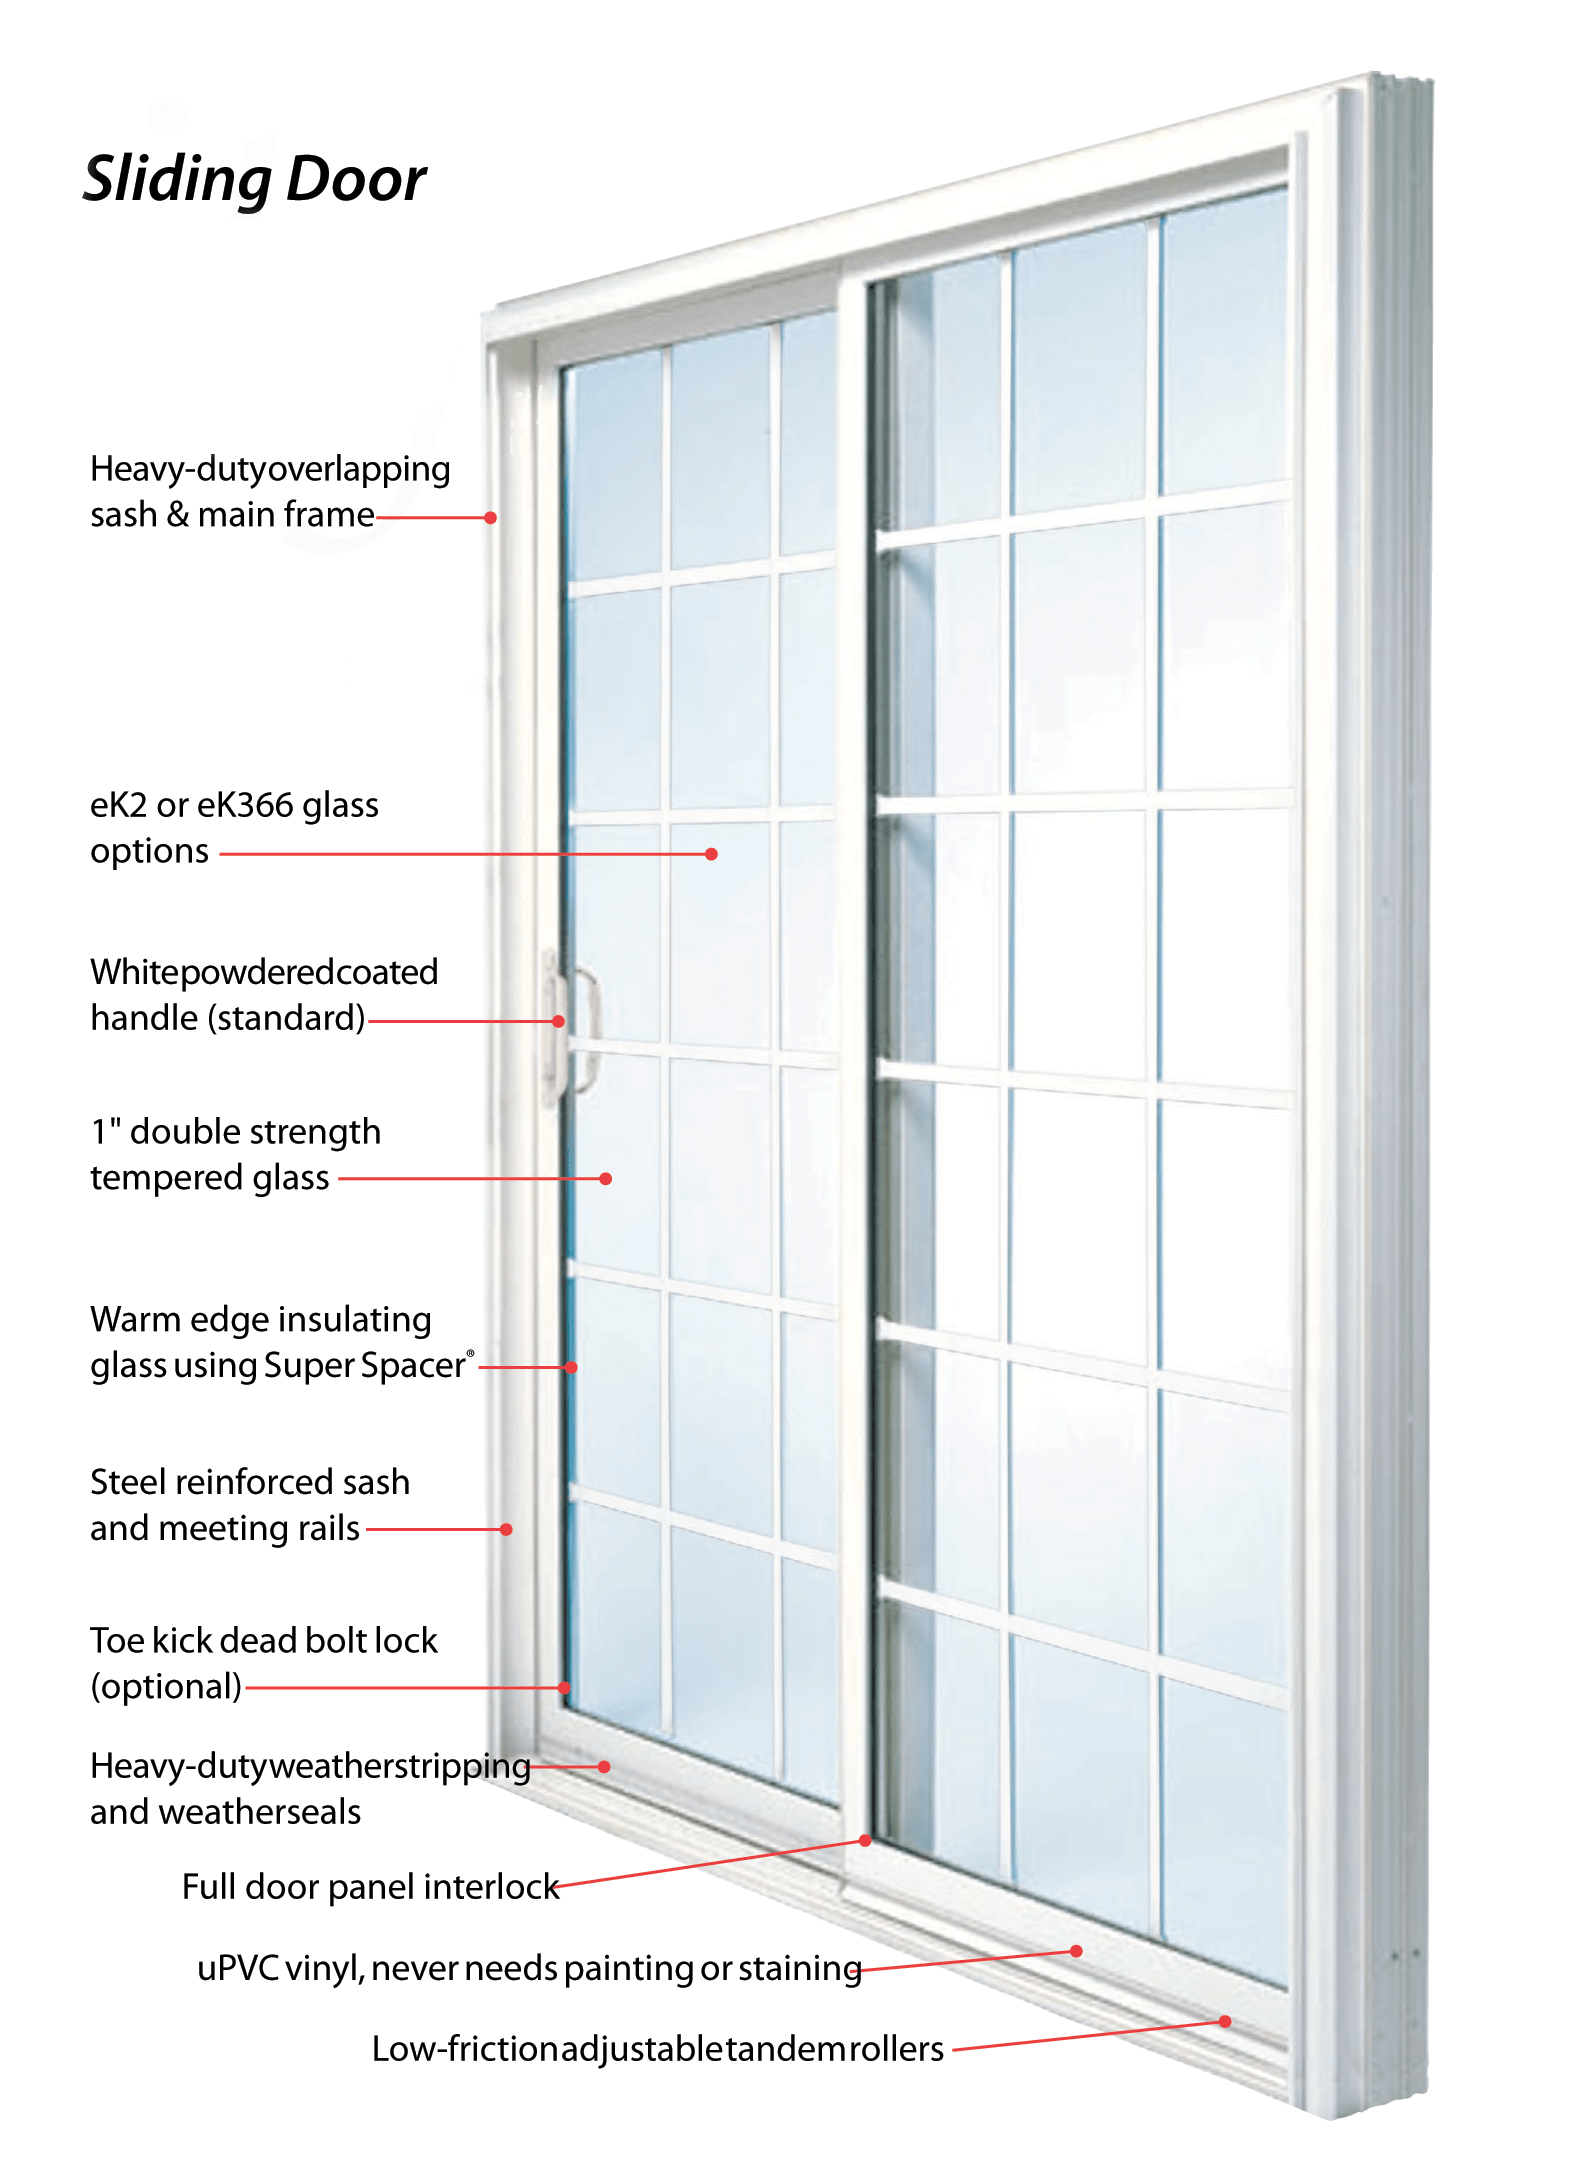 Benefits of Efficient Door Installation